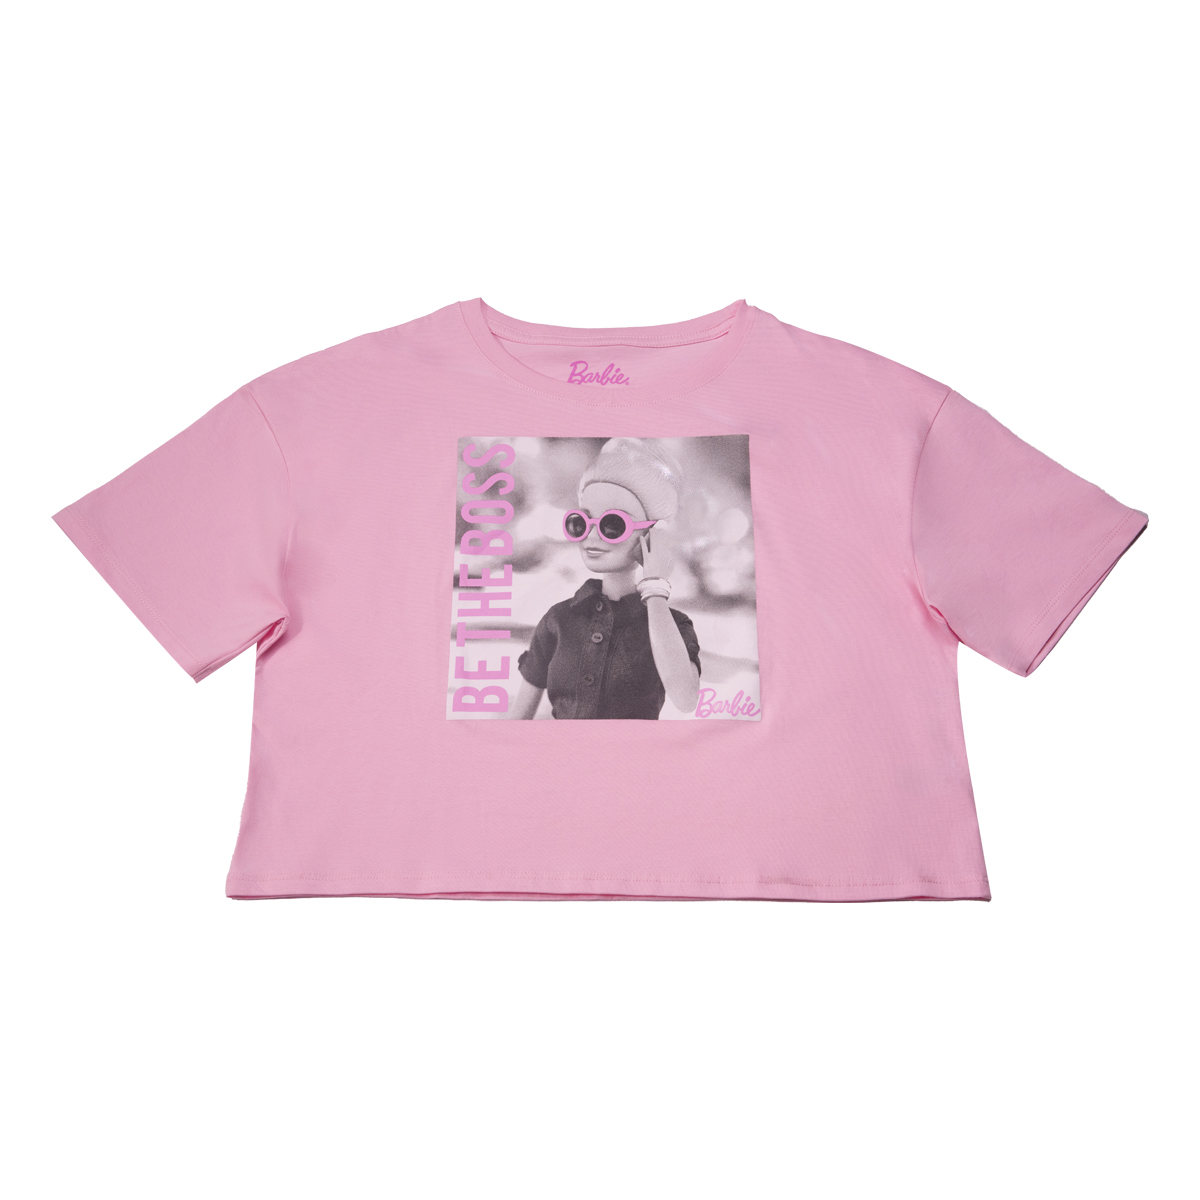 Camiseta Niña Barbie Manga Corta Estampado Rosado - Varias Tallas - 990186